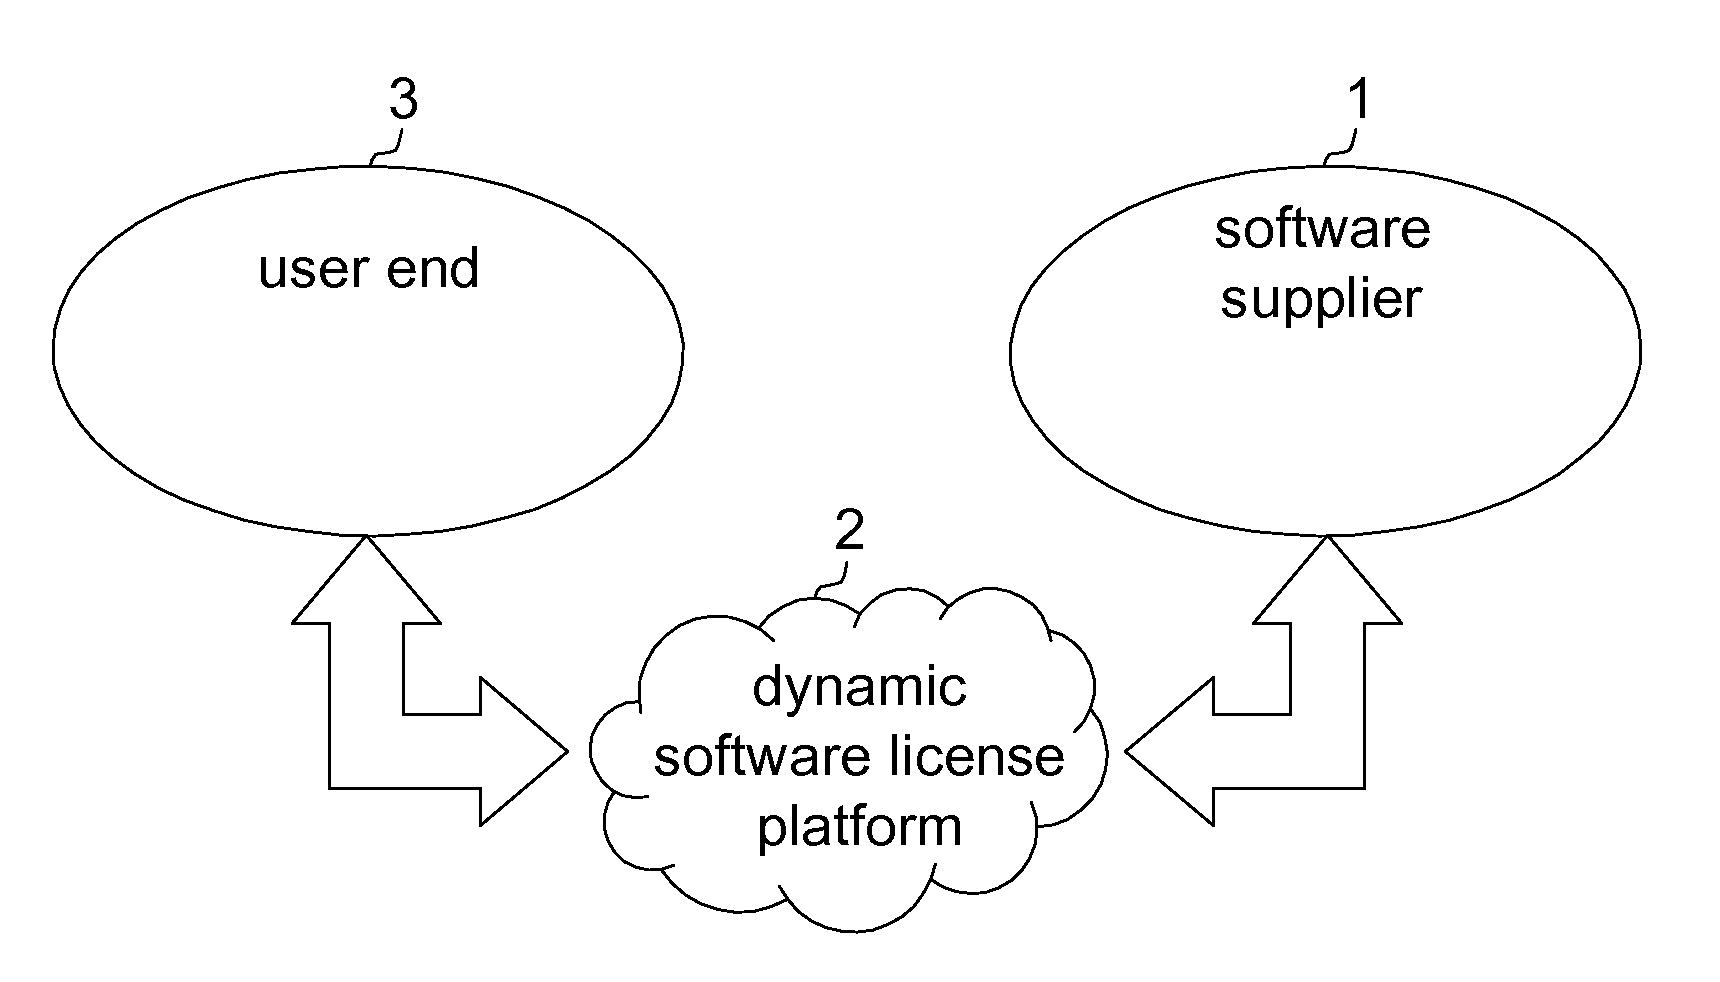 Platform and method for dynamic software license